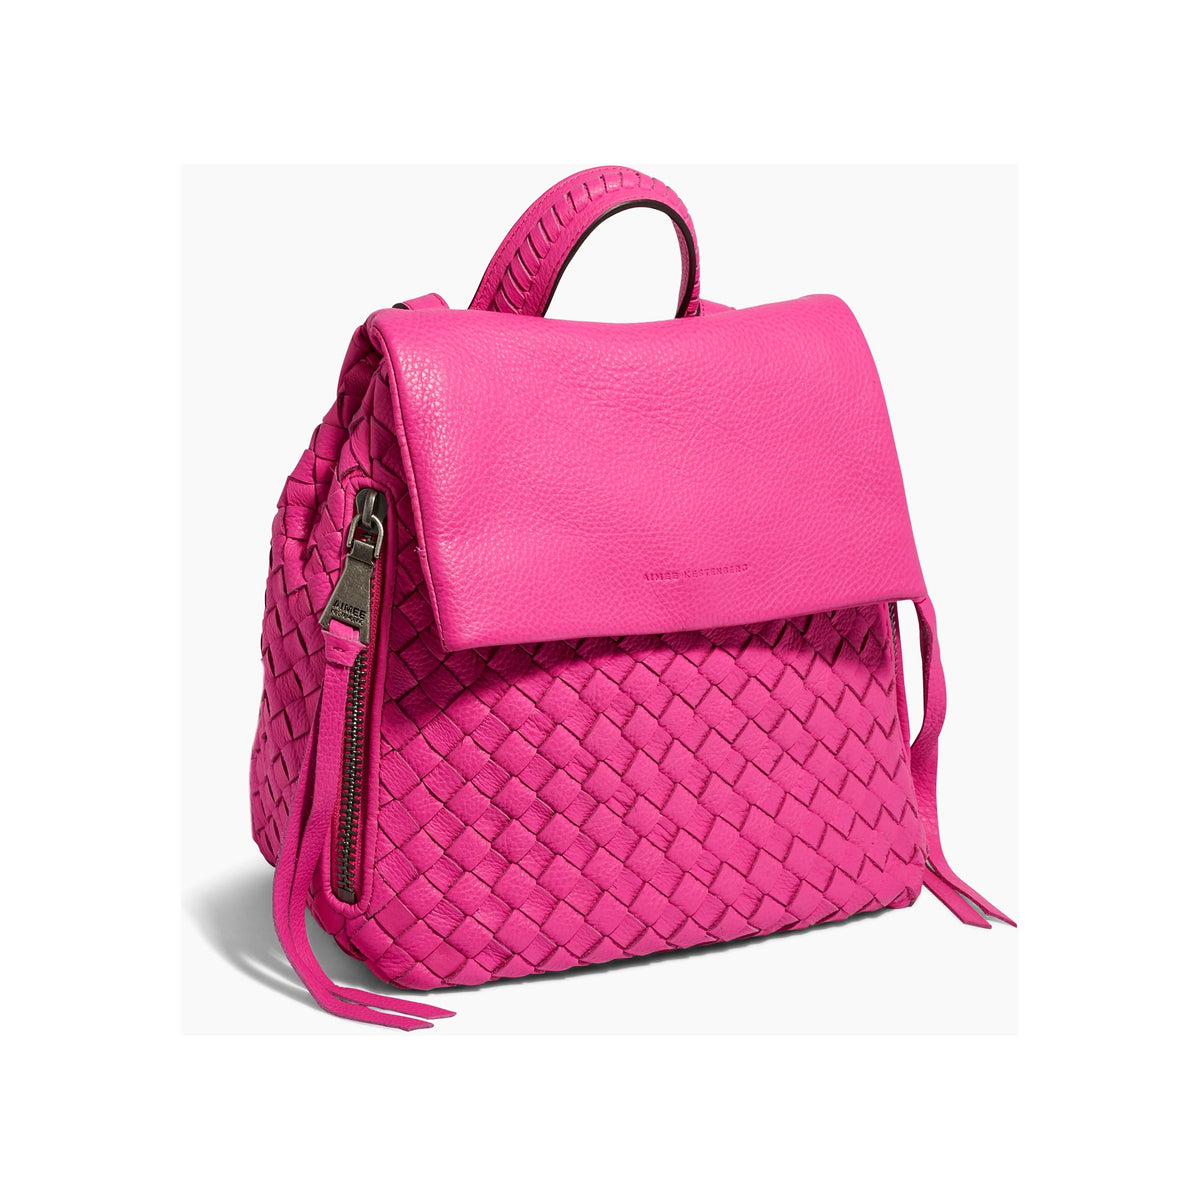 Bali Backpack in Fuchsia Pink